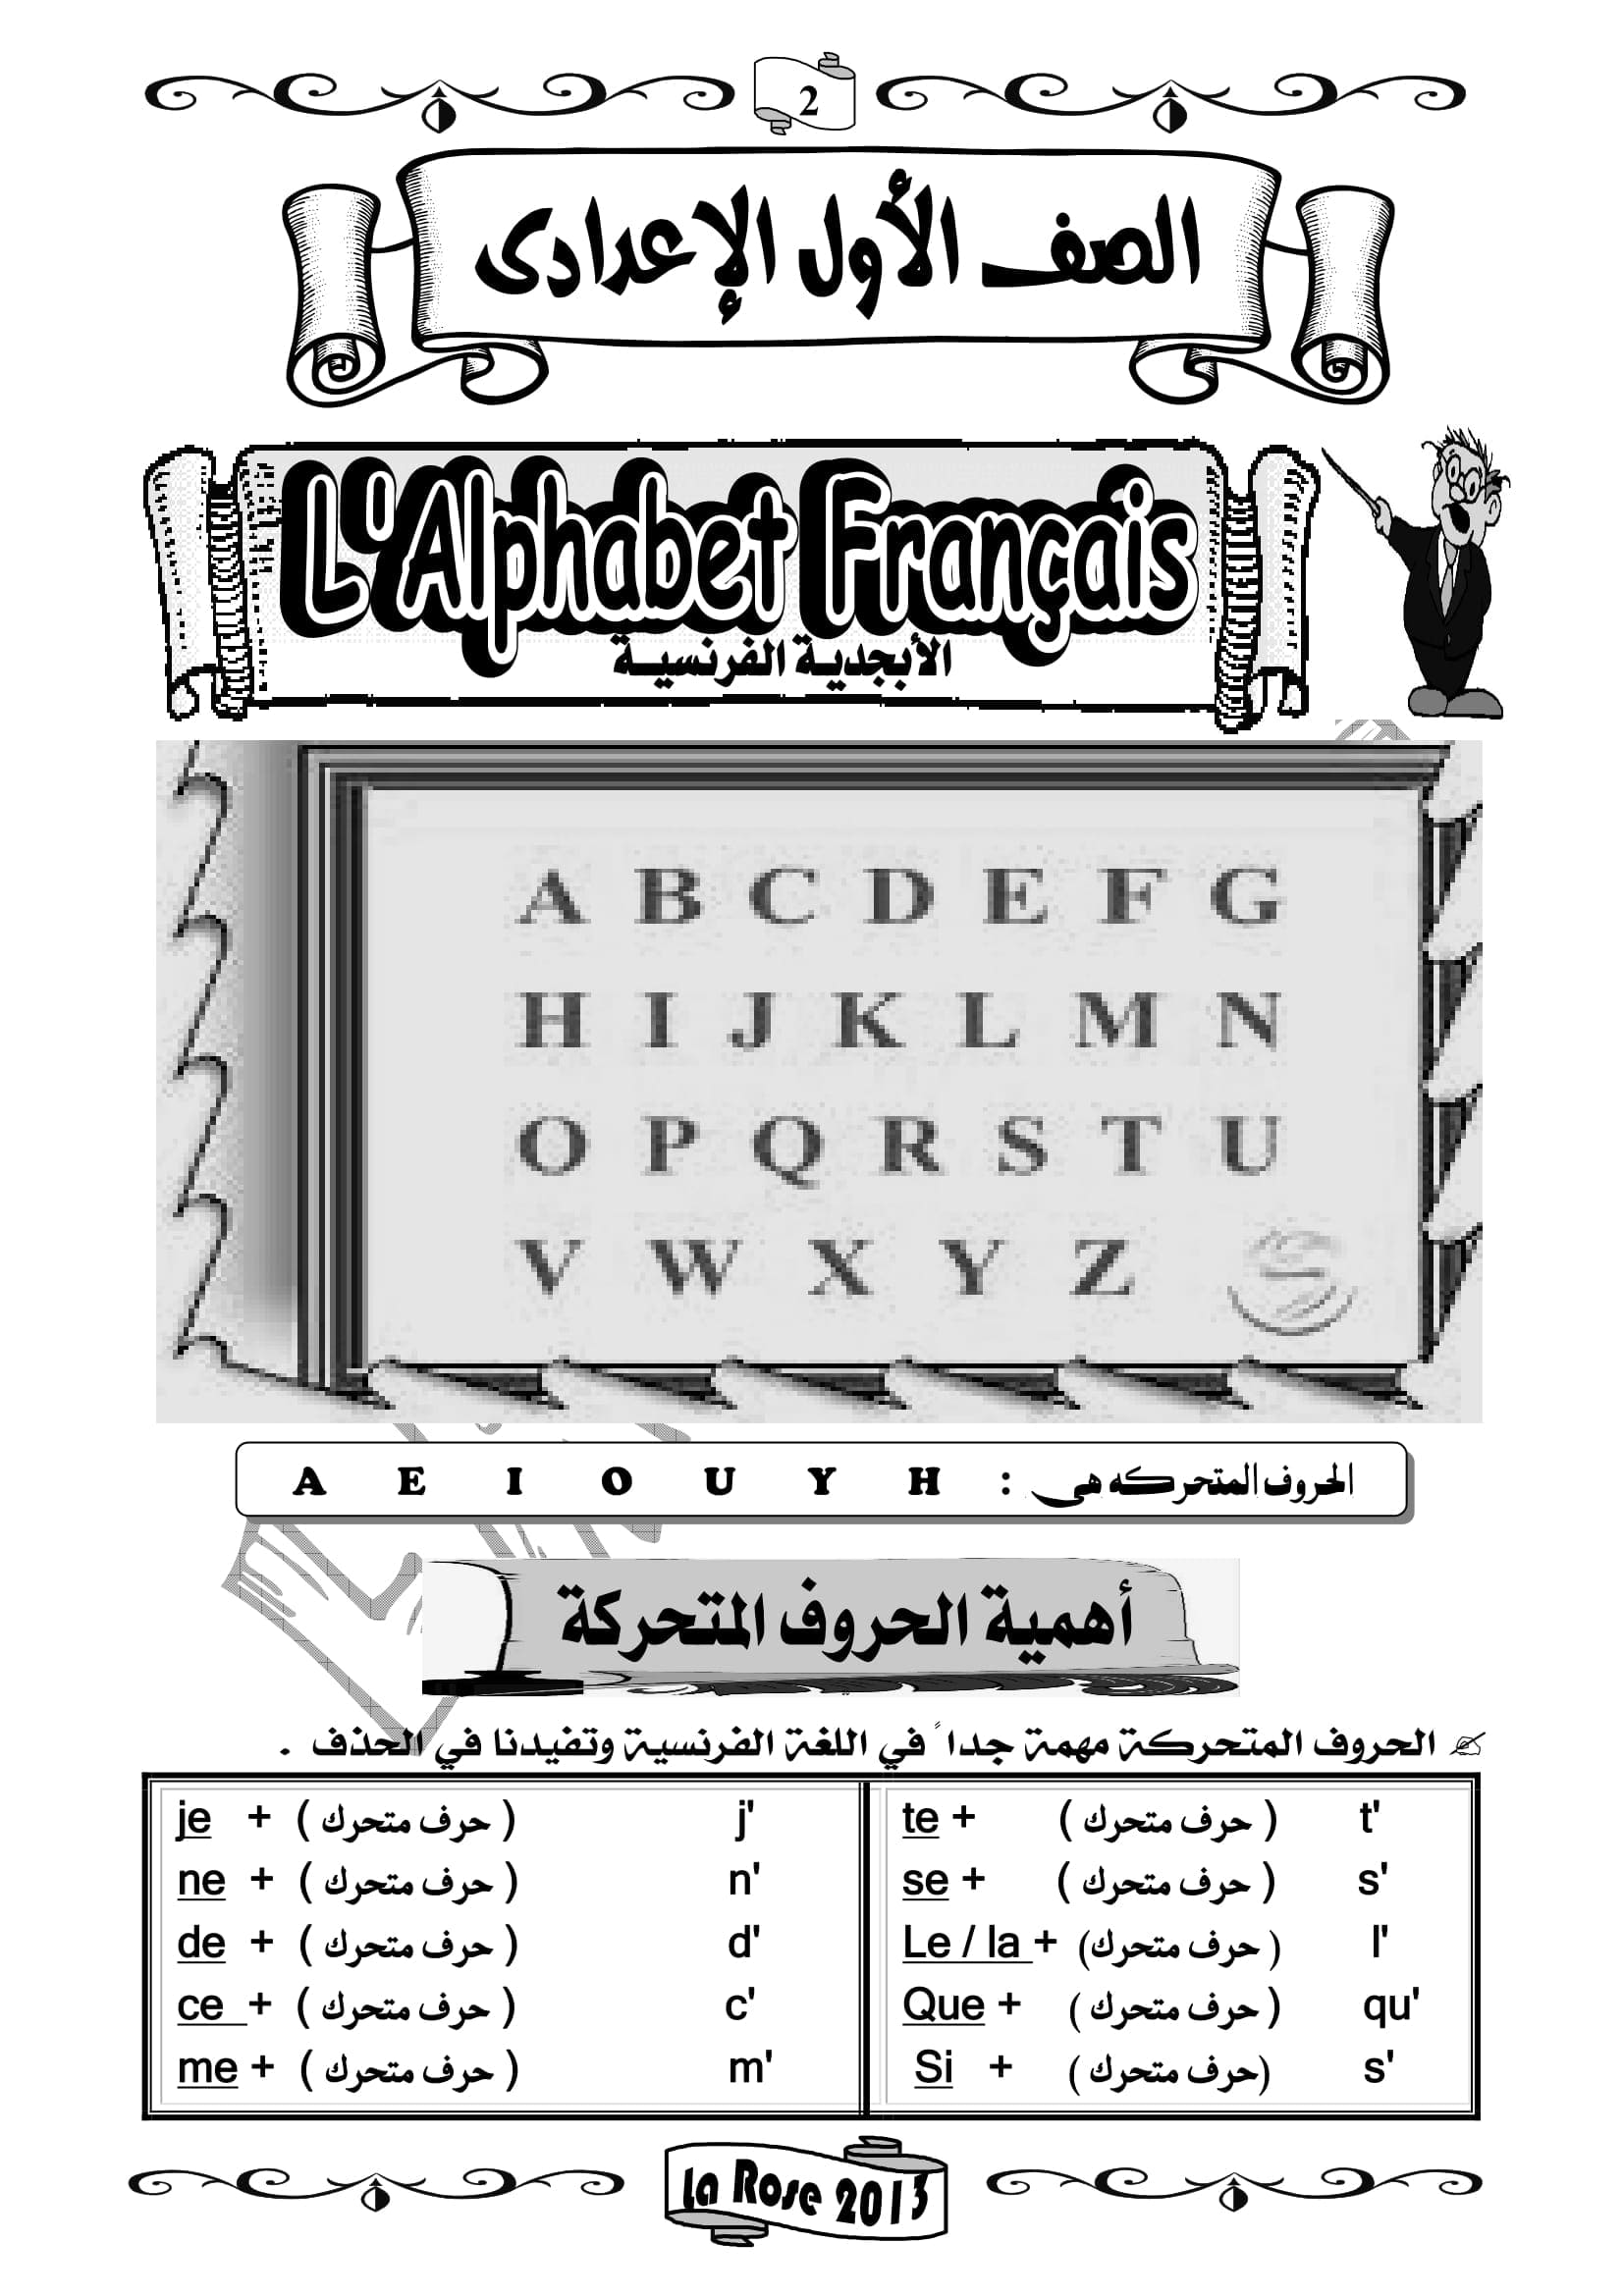 ملزمة شرح كل قواعد اللغة الفرنسية مع امثلة للتوضيح للصف الاول الاعدادى اللغات الترم الاول